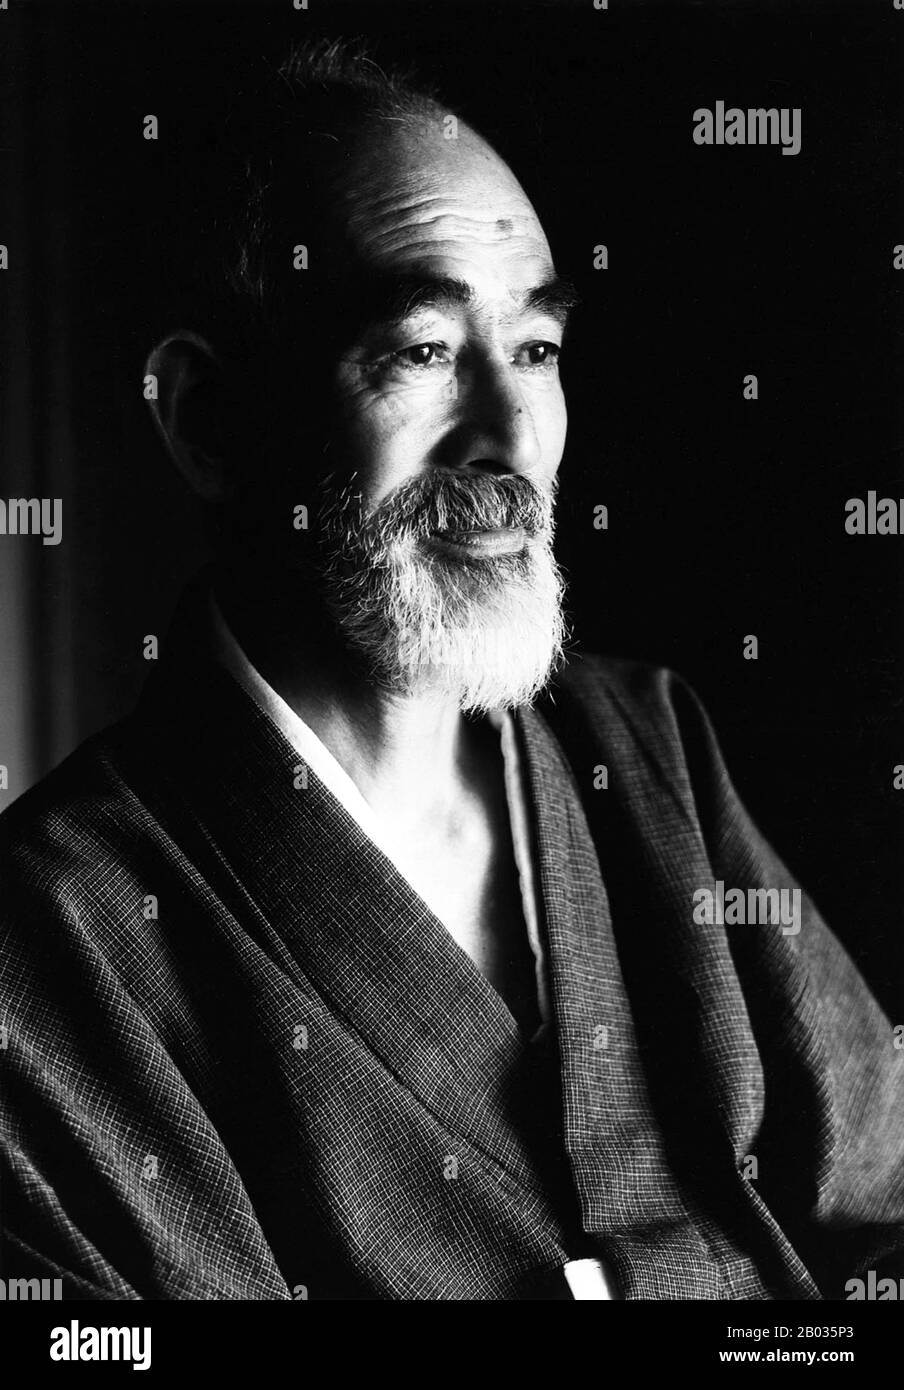 Naoya Shiga (20 février 1883 – 21 octobre 1971) était un romancier japonais et écrivain de courte histoire actif pendant les périodes de Taisho et Showa au Japon. Ken Domon (25 octobre 1909 – 15 septembre 1990) est l'un des photographes japonais les plus renommés du XXe siècle. Il est le plus célèbre comme photojournaliste, bien qu'il ait peut-être été le plus prolifique en tant que photographe de temples bouddhistes et de statuaire. Banque D'Images